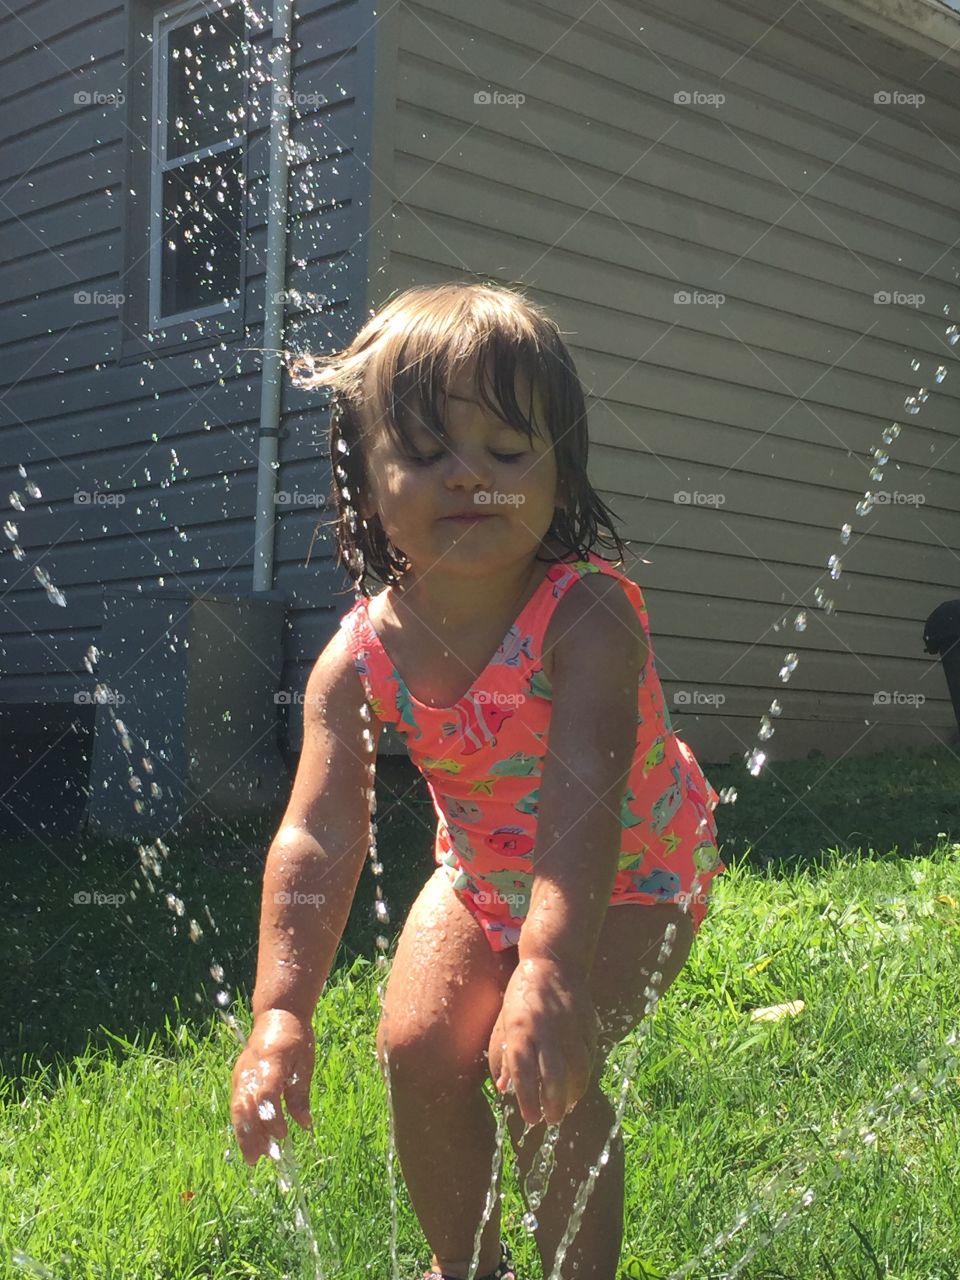 Little girl playing near garden sprinkler